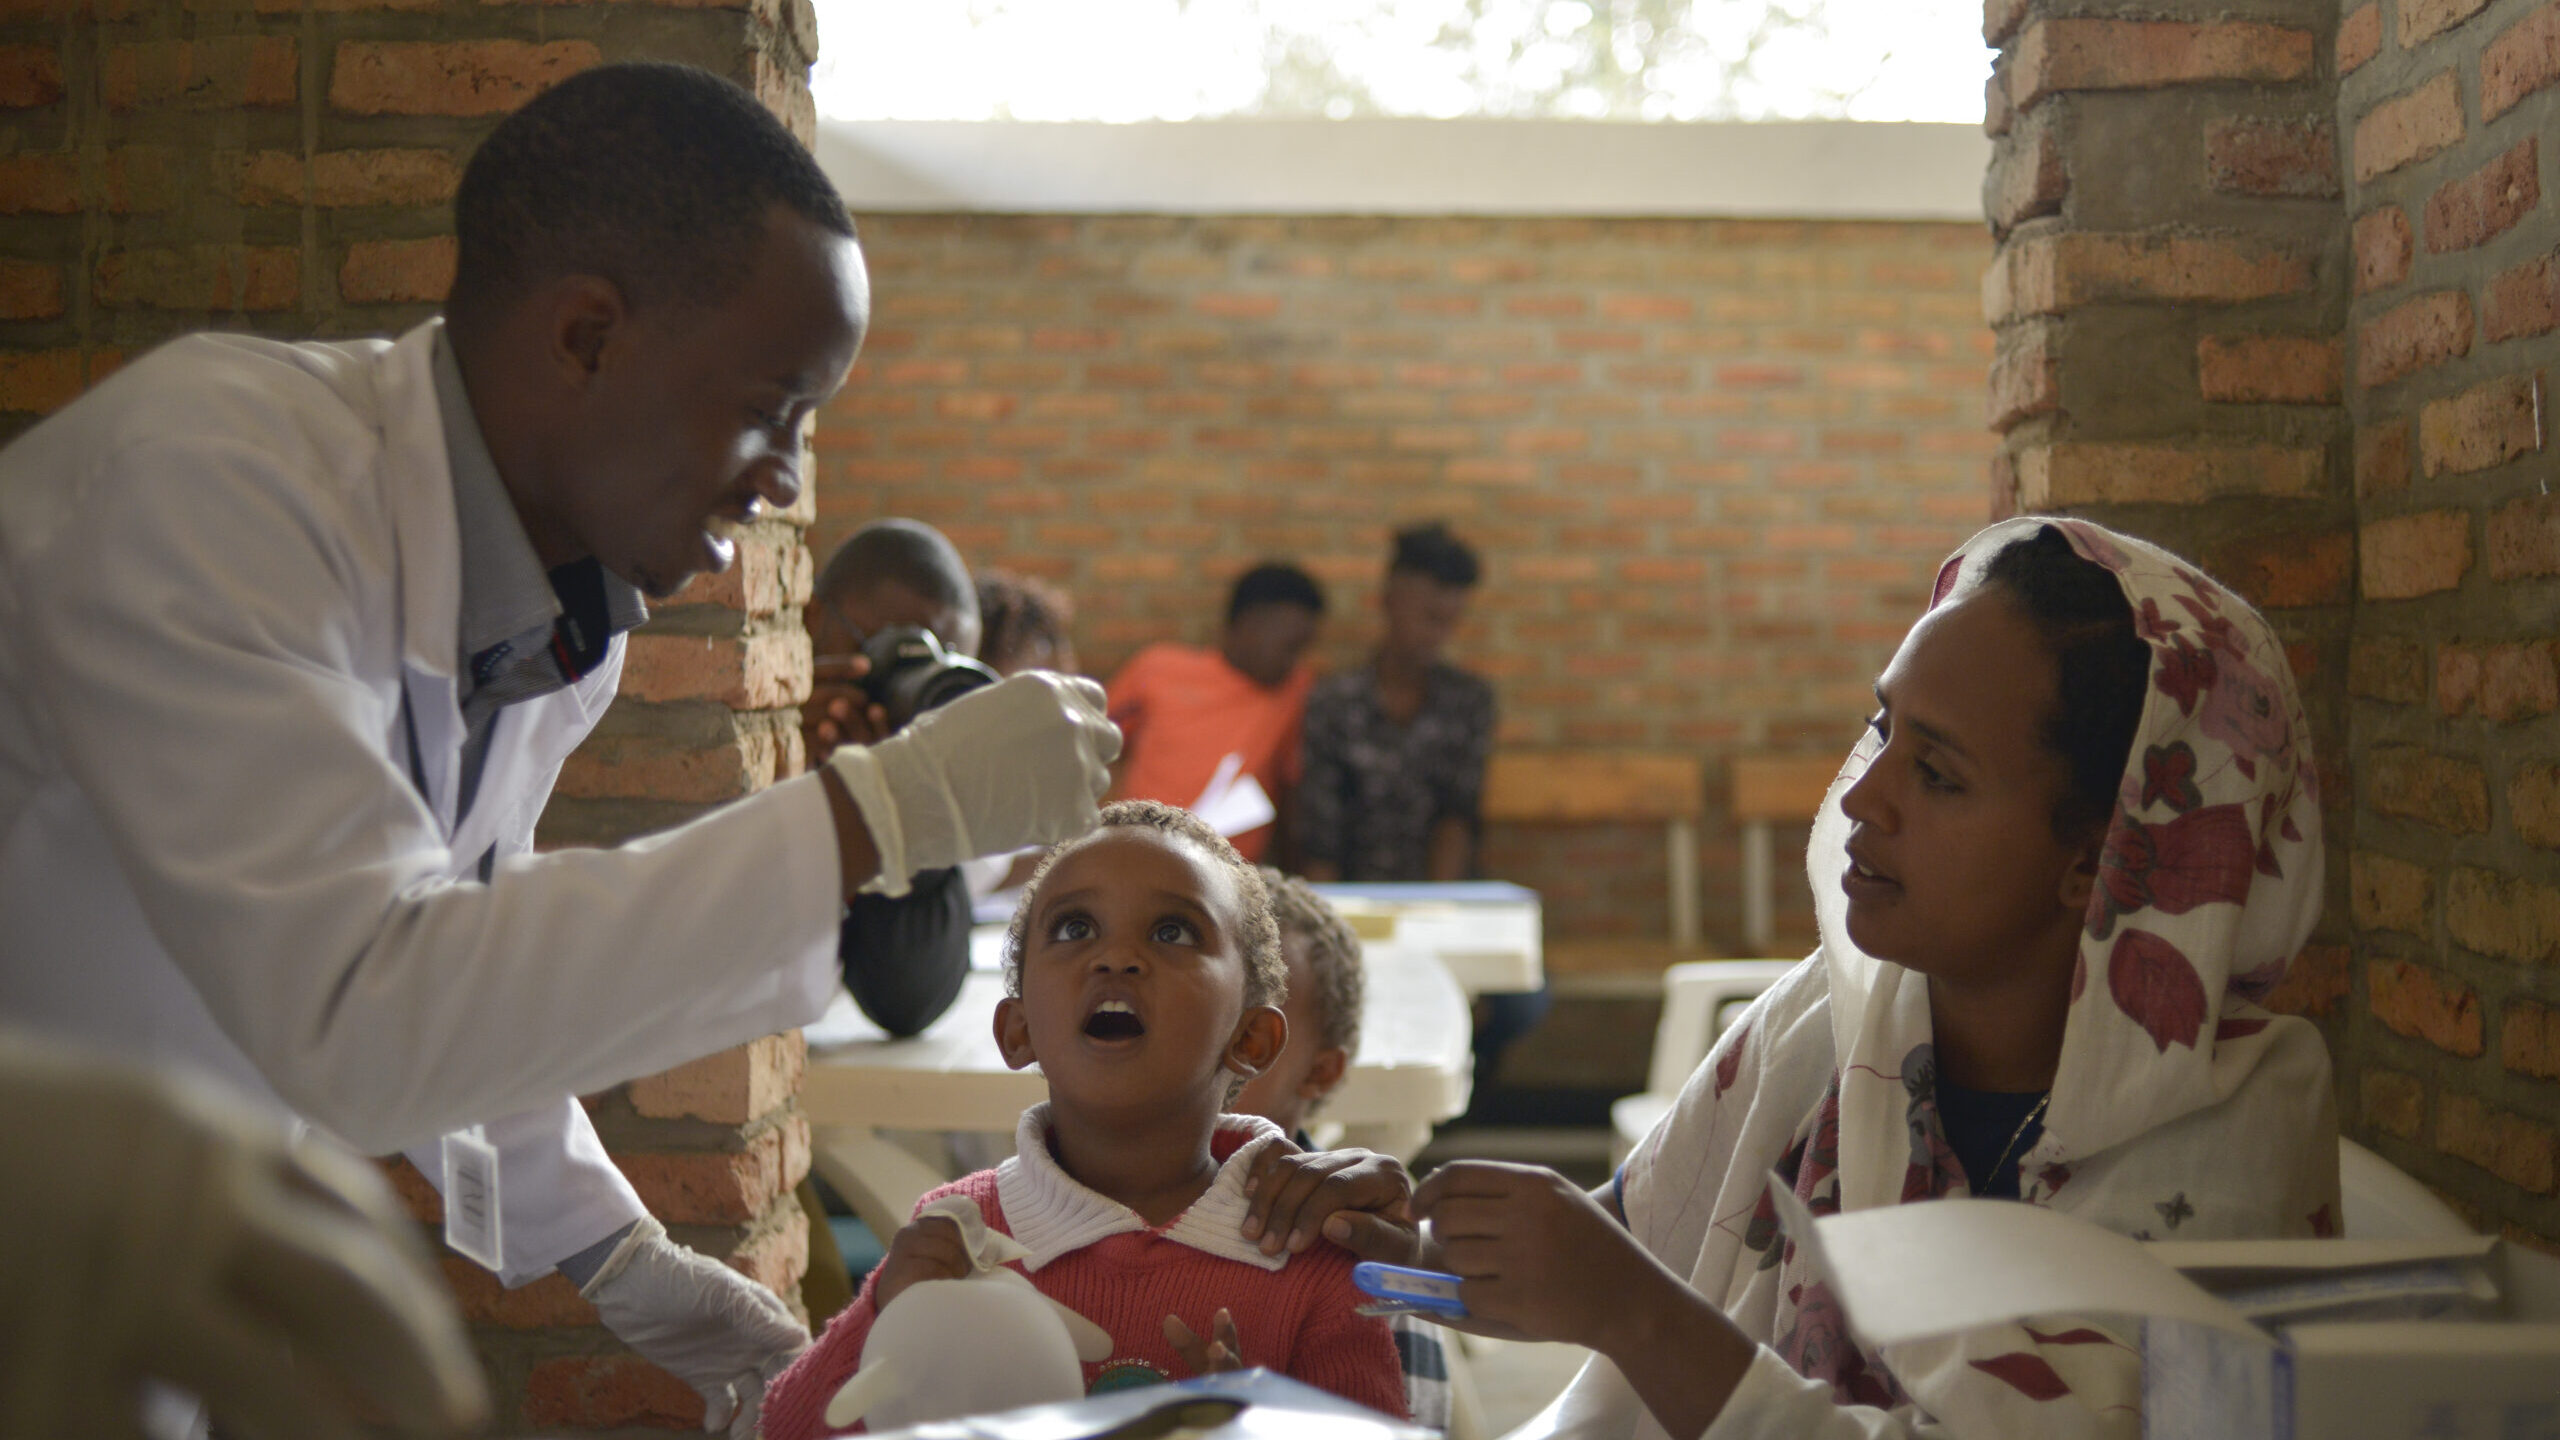 Een jong kind krijgt een poliovaccin toegediend tijdens zijn medische screening in het Gashora Emergency Transit Center in Rwanda. © UNHCR/Tobin Jones